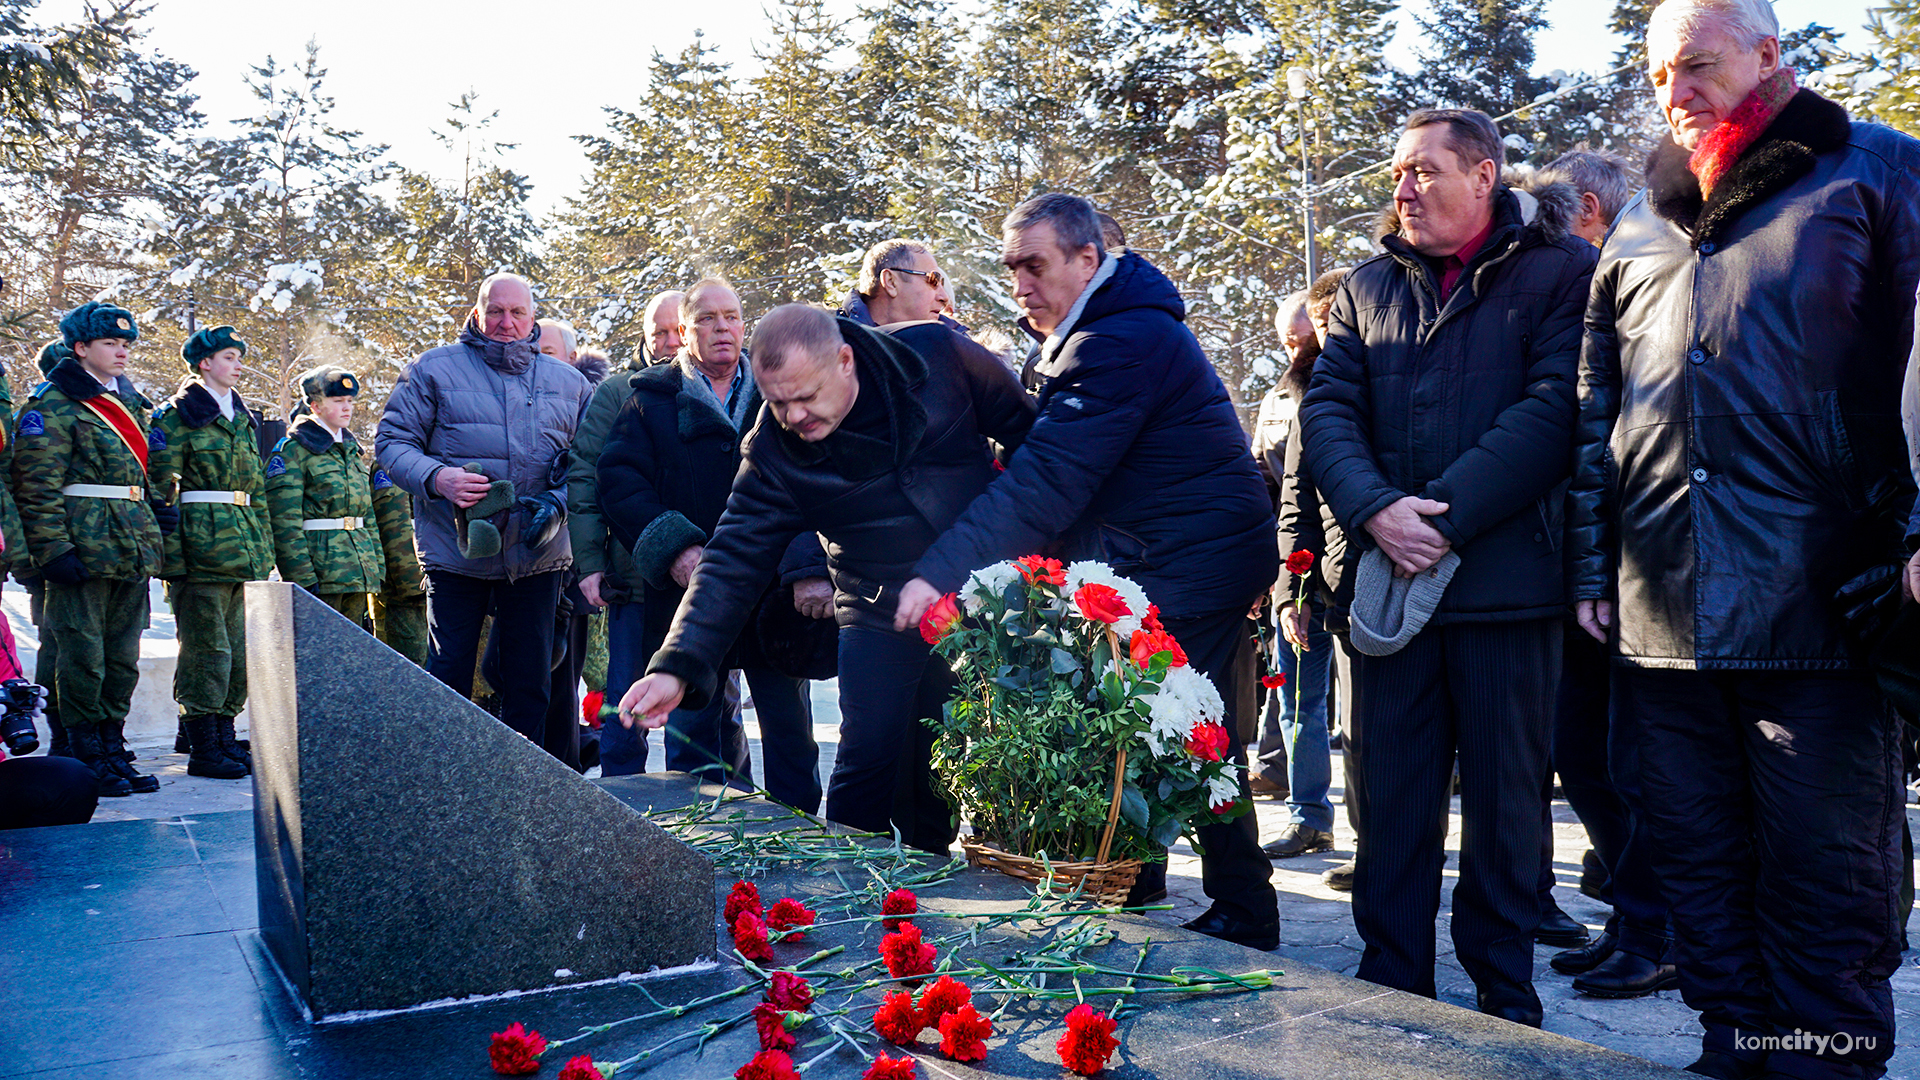  Память воинов-интернационалистов, погибших в международных конфликтах, почтили в Комсомольске-на-Амуре возложением цветов  